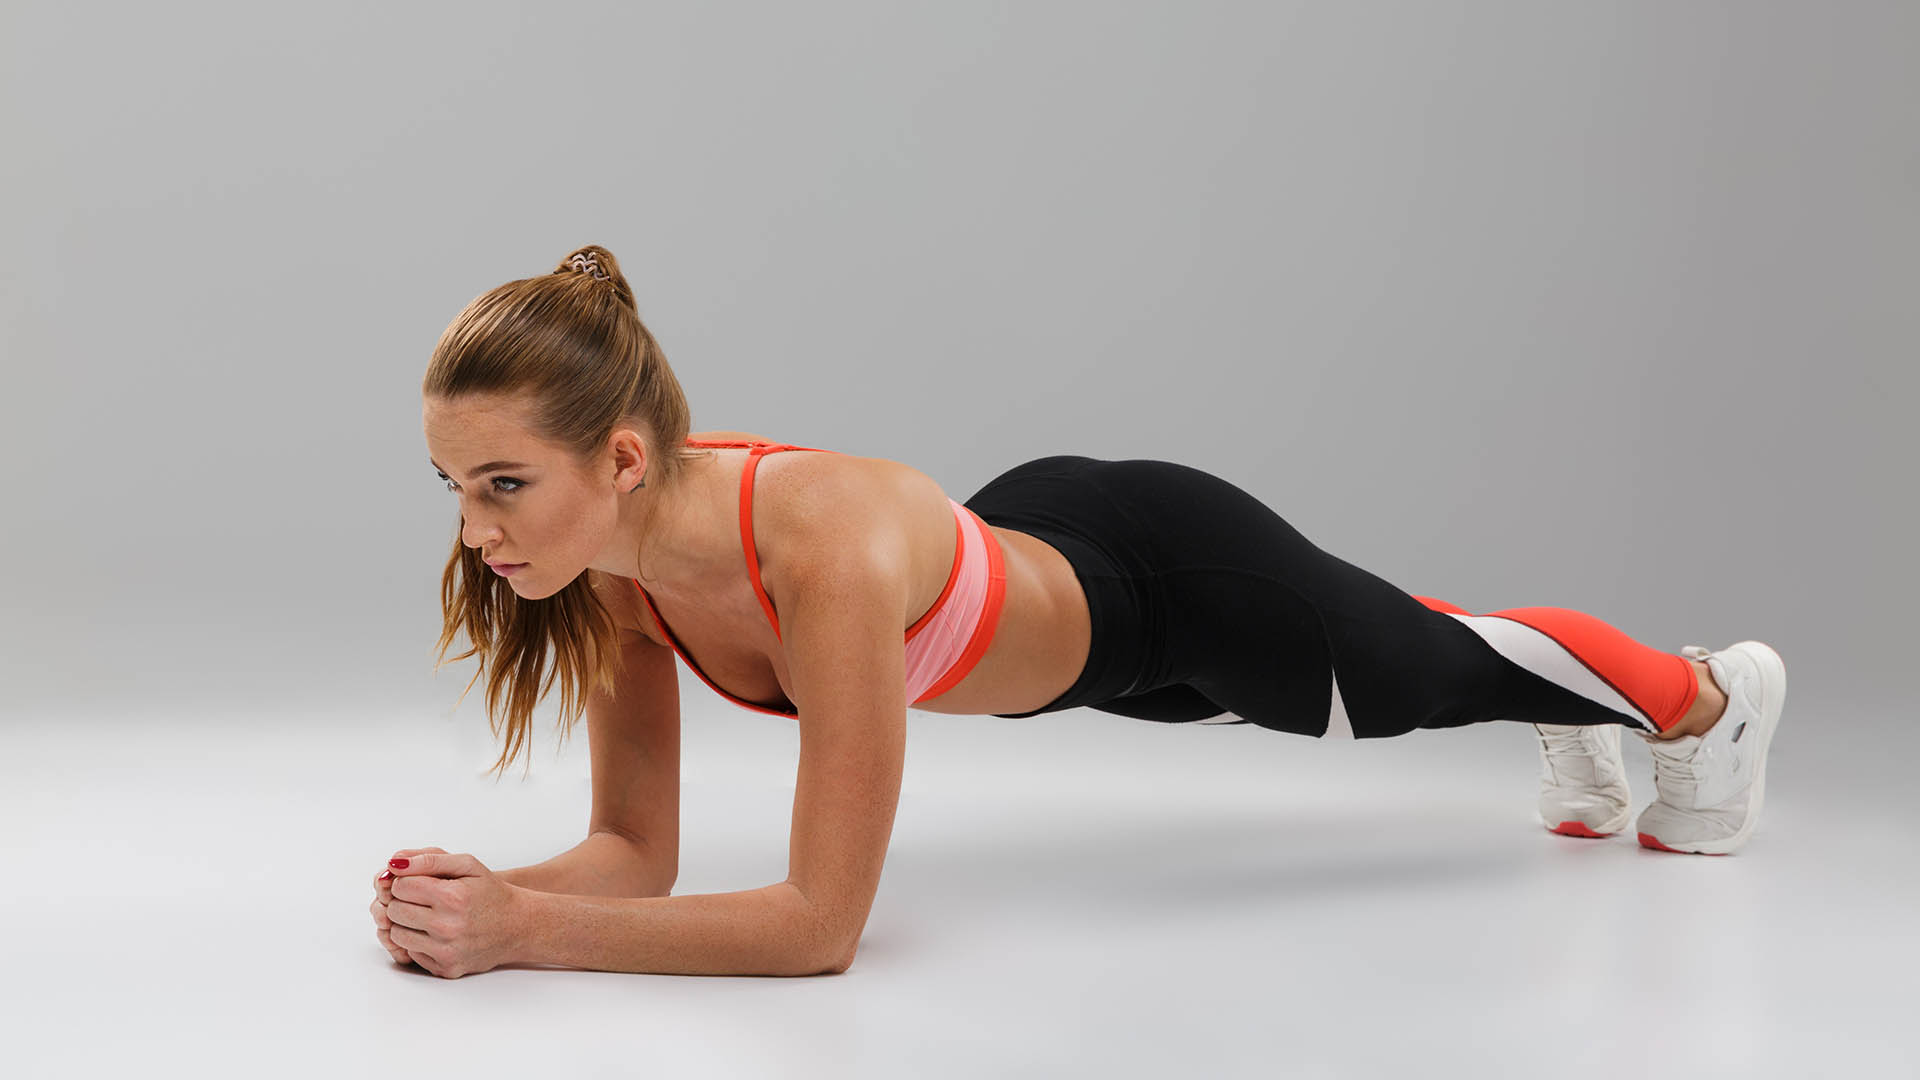 Il plank  un esercizio per educare il corpo a stabilizzarsi attraverso l'attivazione della muscolatura appunto detto stabilizzatrice